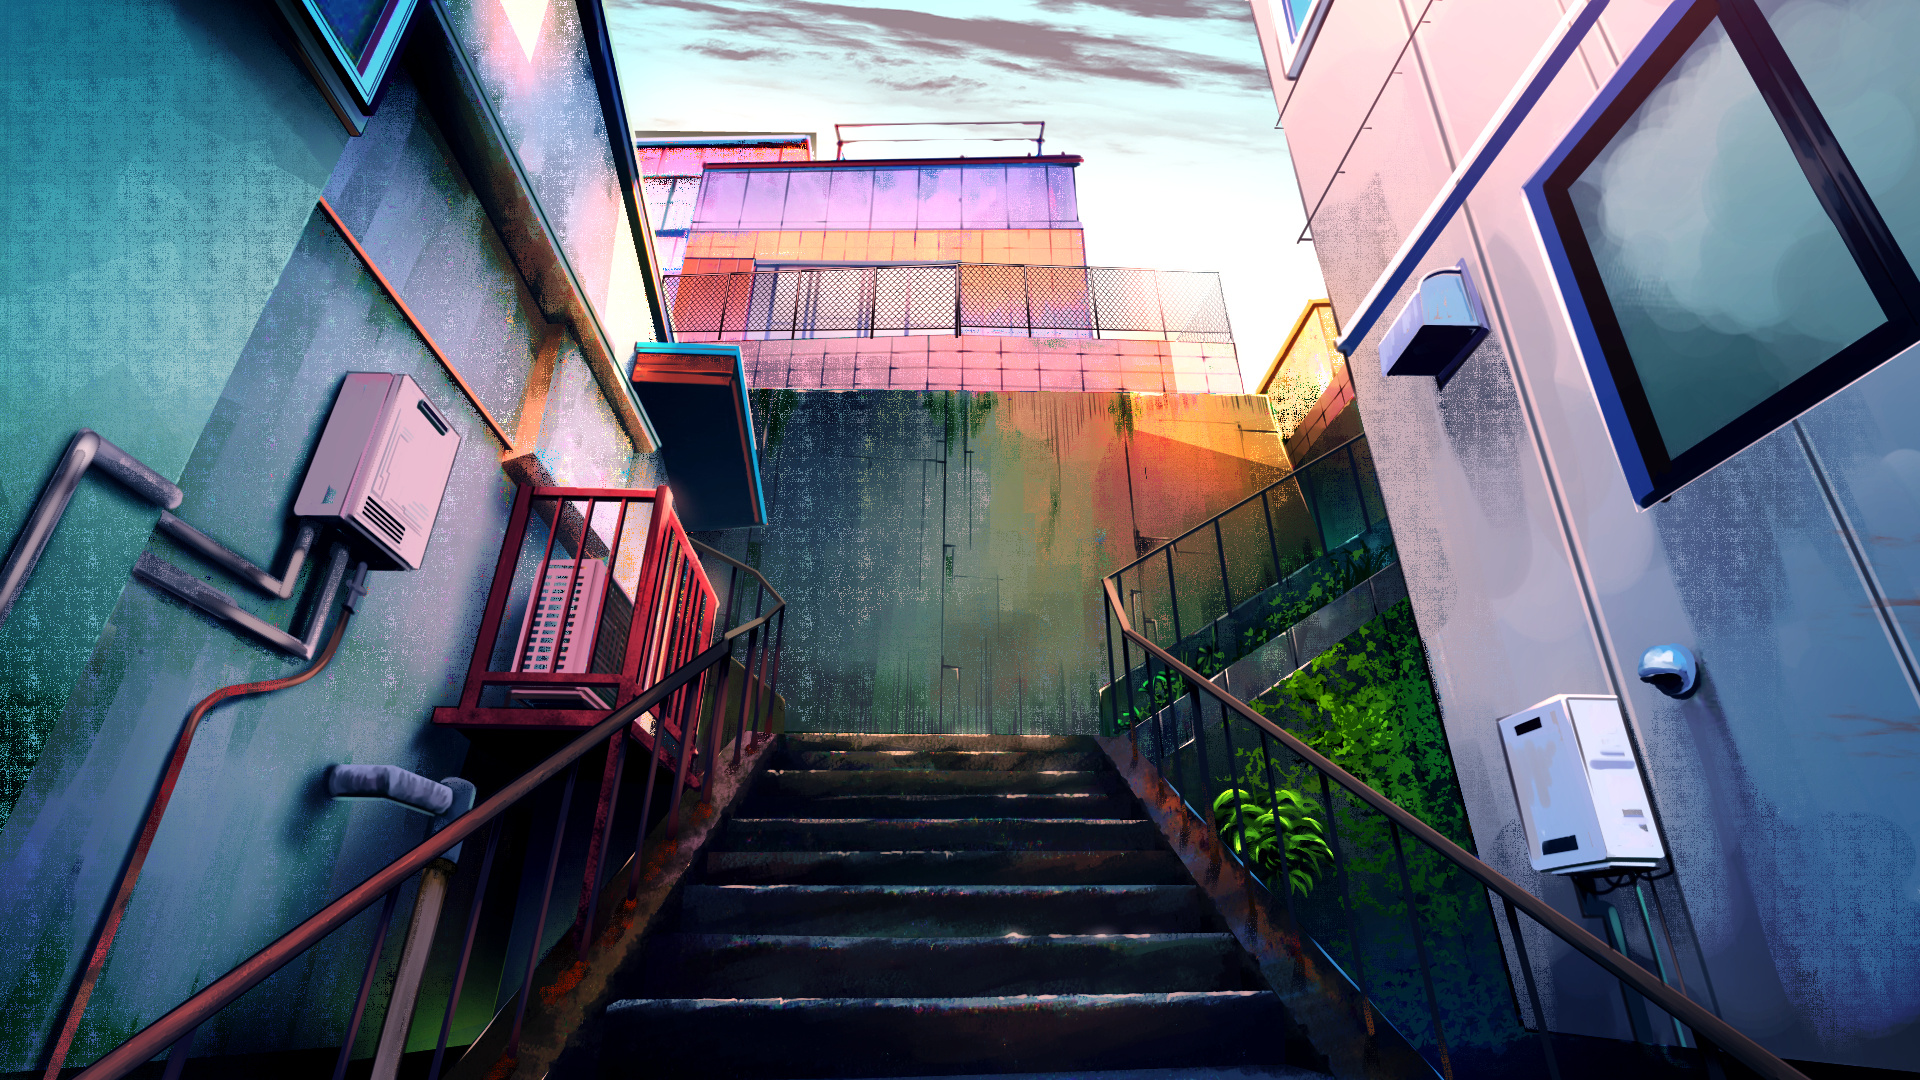 Bạn muốn tìm kiếm một bức hình nền anime đẹp để làm màn hình nền cho máy tính của mình? Với wallpaper anime chất lượng cao về các khu phố, tòa nhà, các bậc thang và thành phố, bạn sẽ dễ dàng tìm được bức hình nền chân thật và đầy mê hoặc.